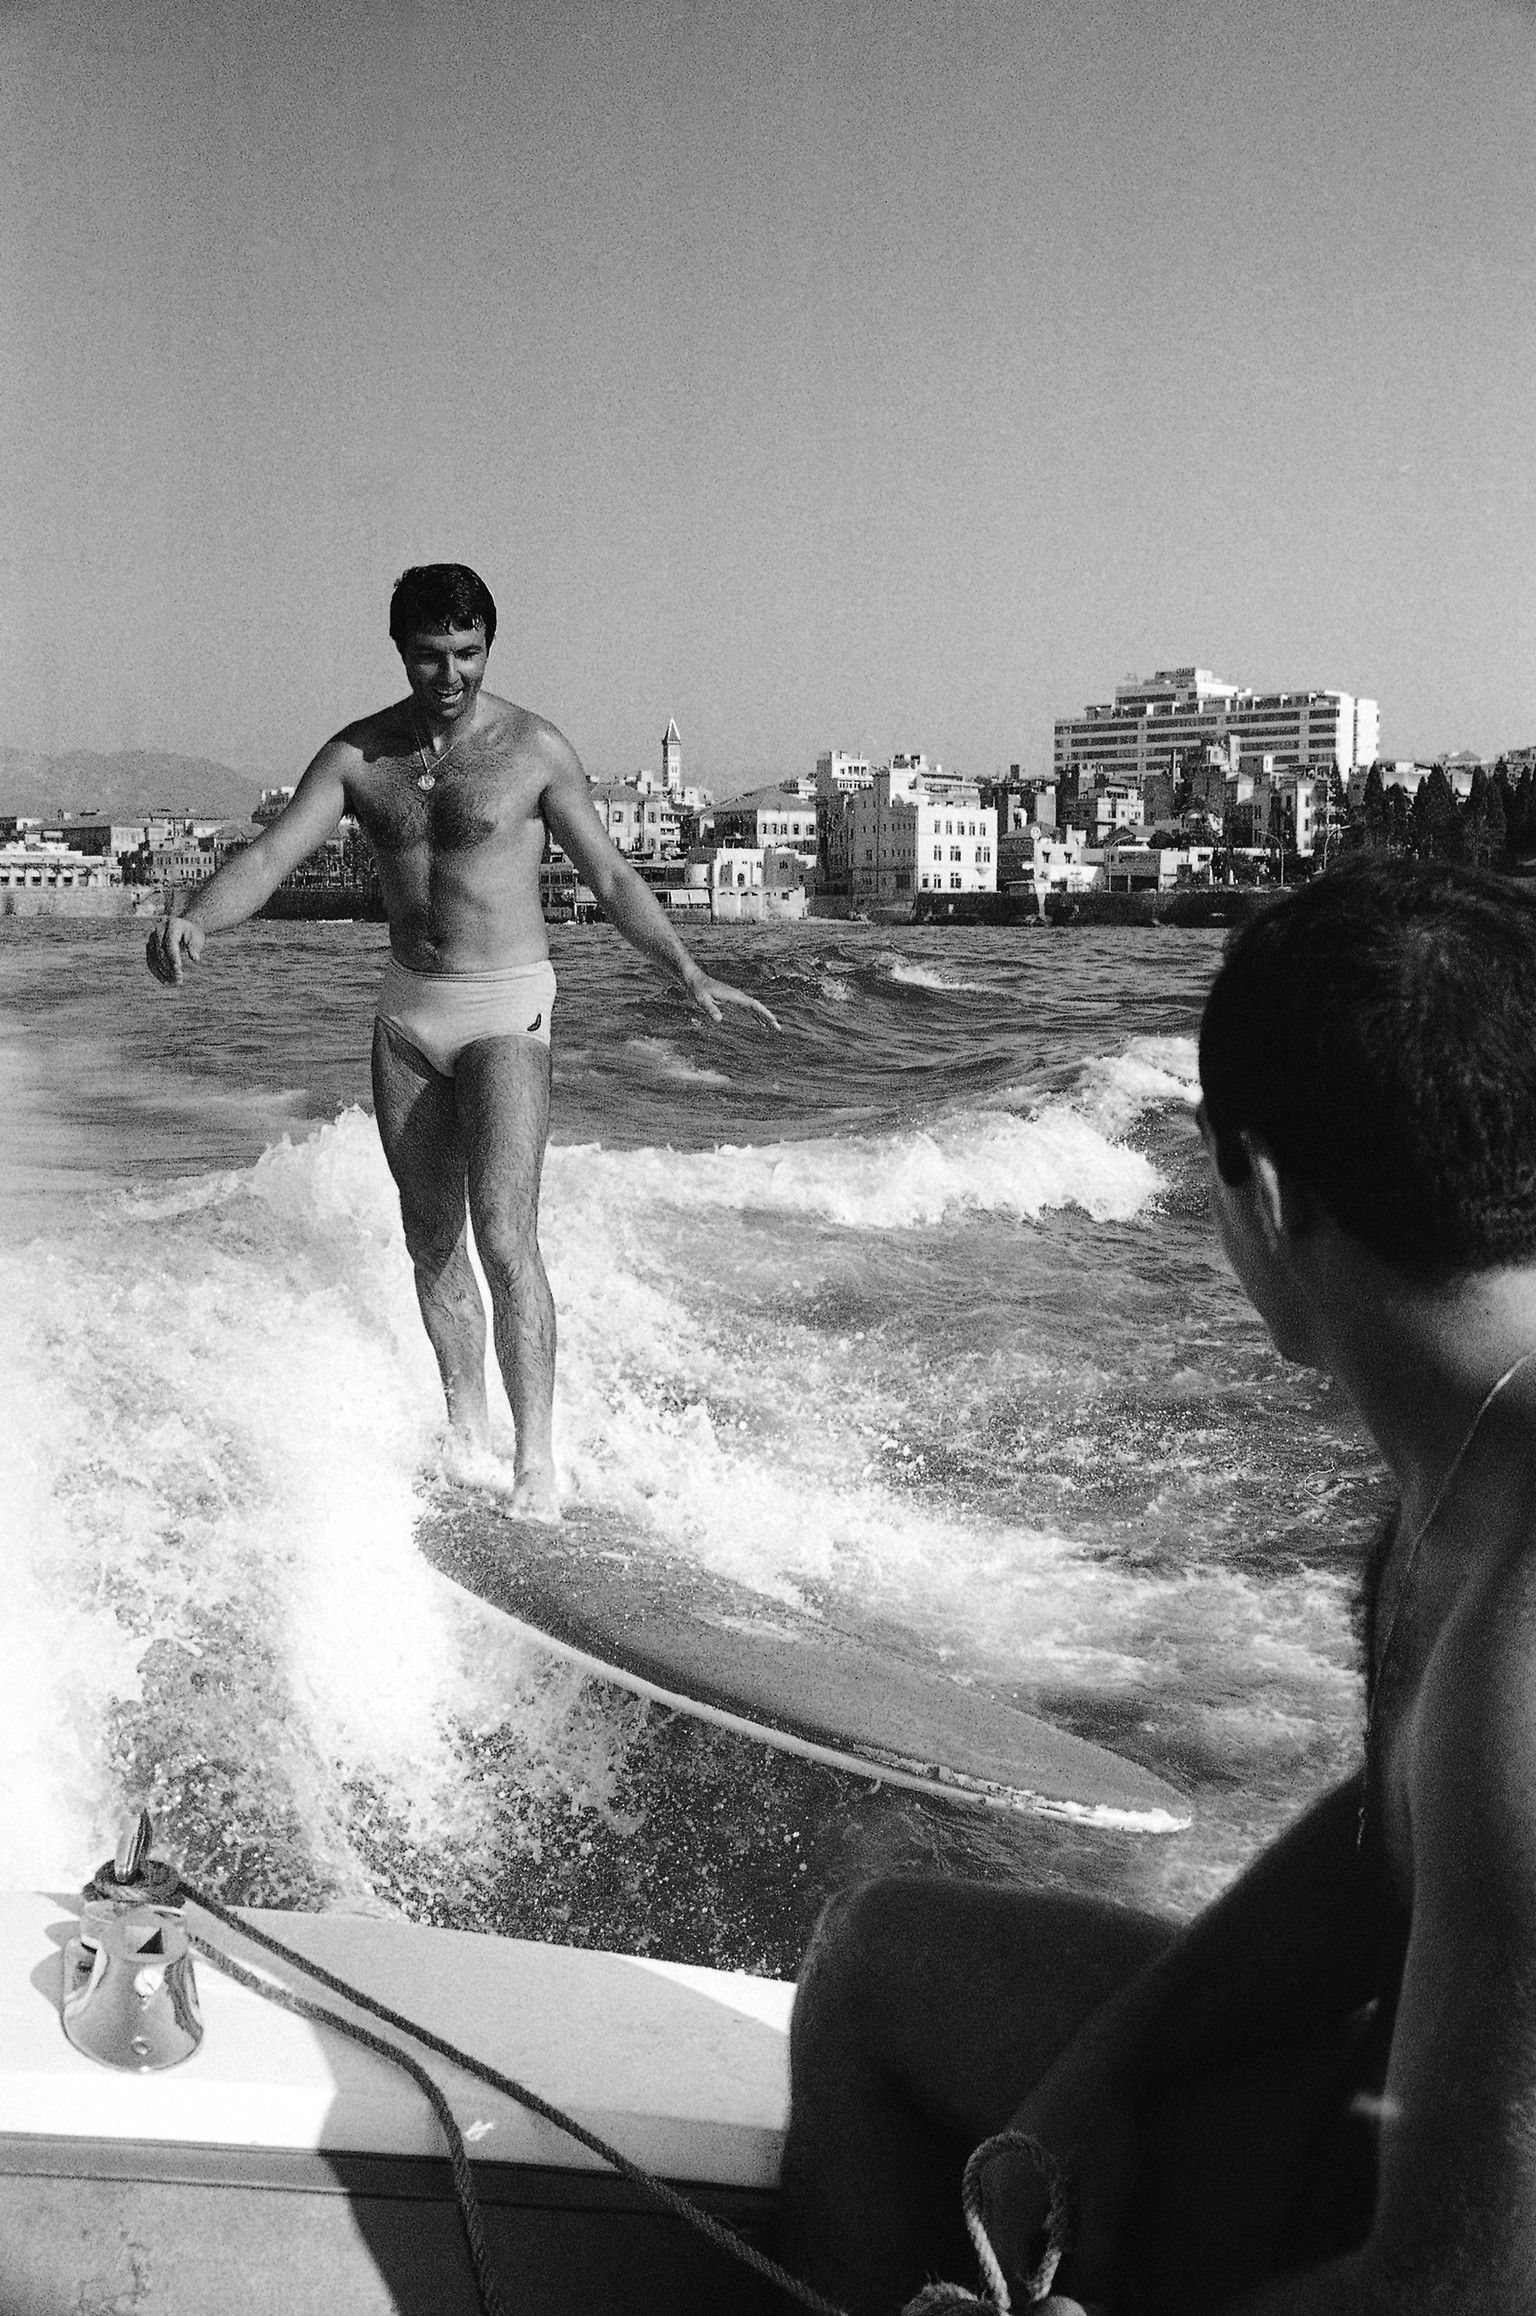 Der junge libanesische Unternehmer Eddy Arida surft vor der Kulisse Beiruts im Kielwasser eines Motorboots. Er behauptet, nur er und Wasserski-Weltmeister Simon Khoury seien dazu in der Lage (25.08.1965).